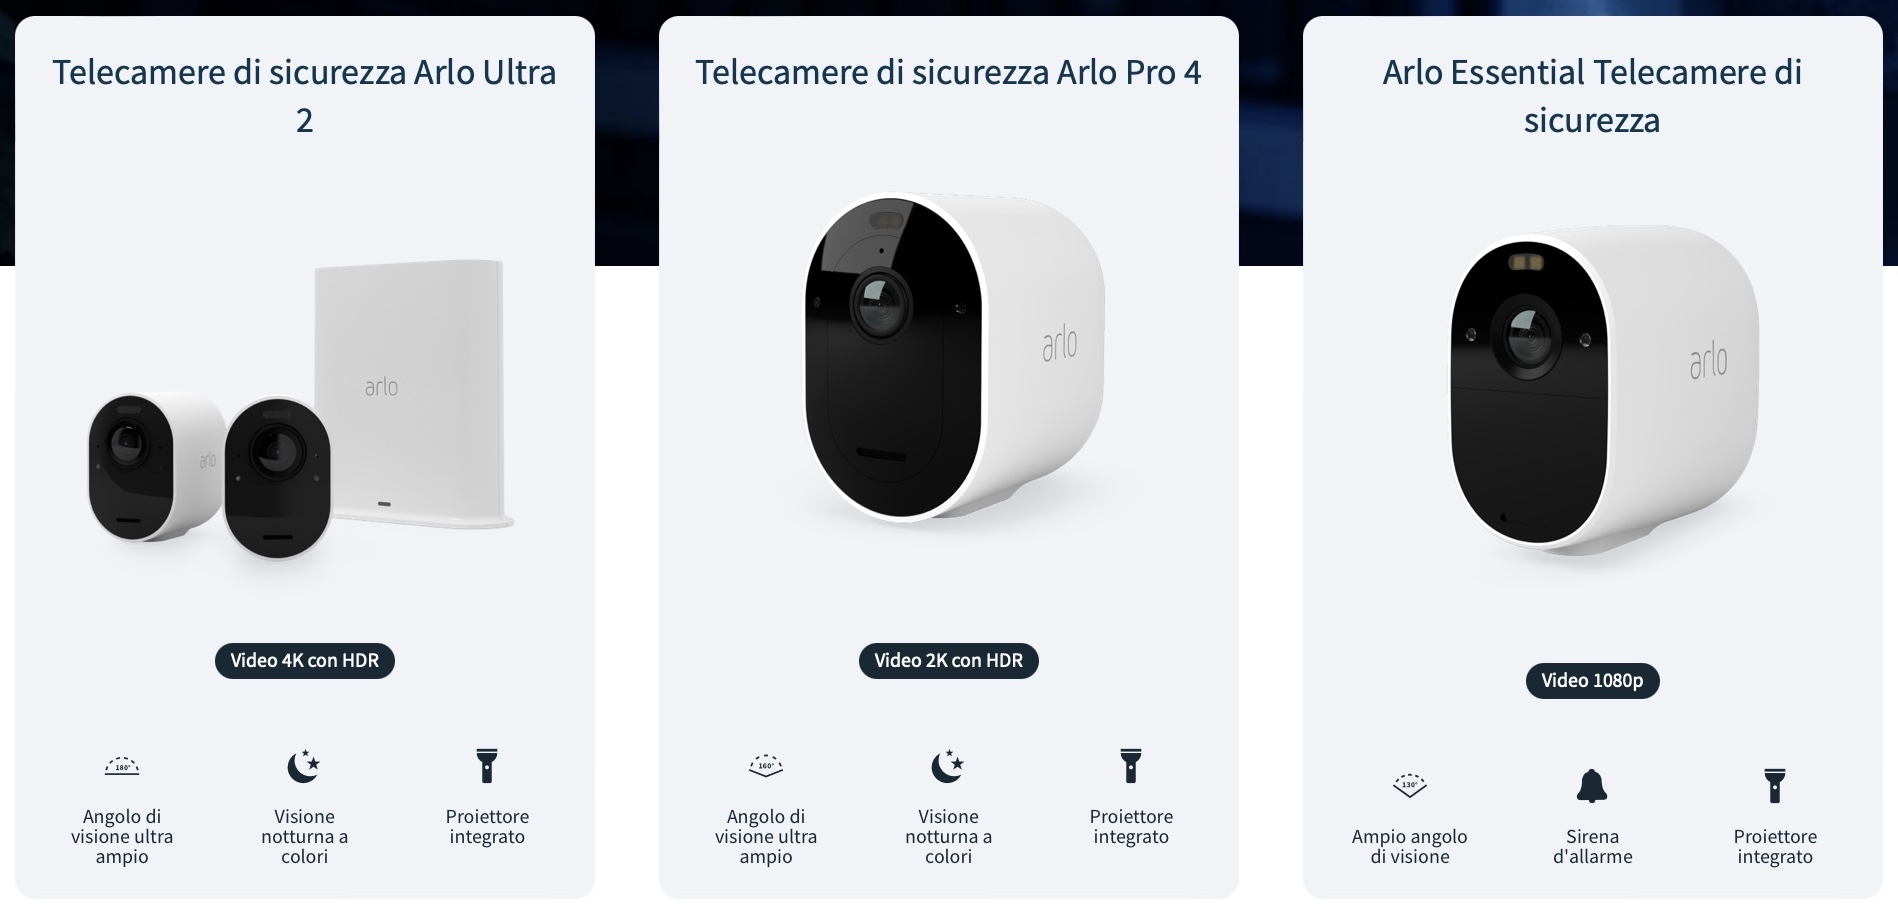 Telecamere e accessori Arlo già in sconto per il Black Friday, compatibili con Alexa, Homekit e Google